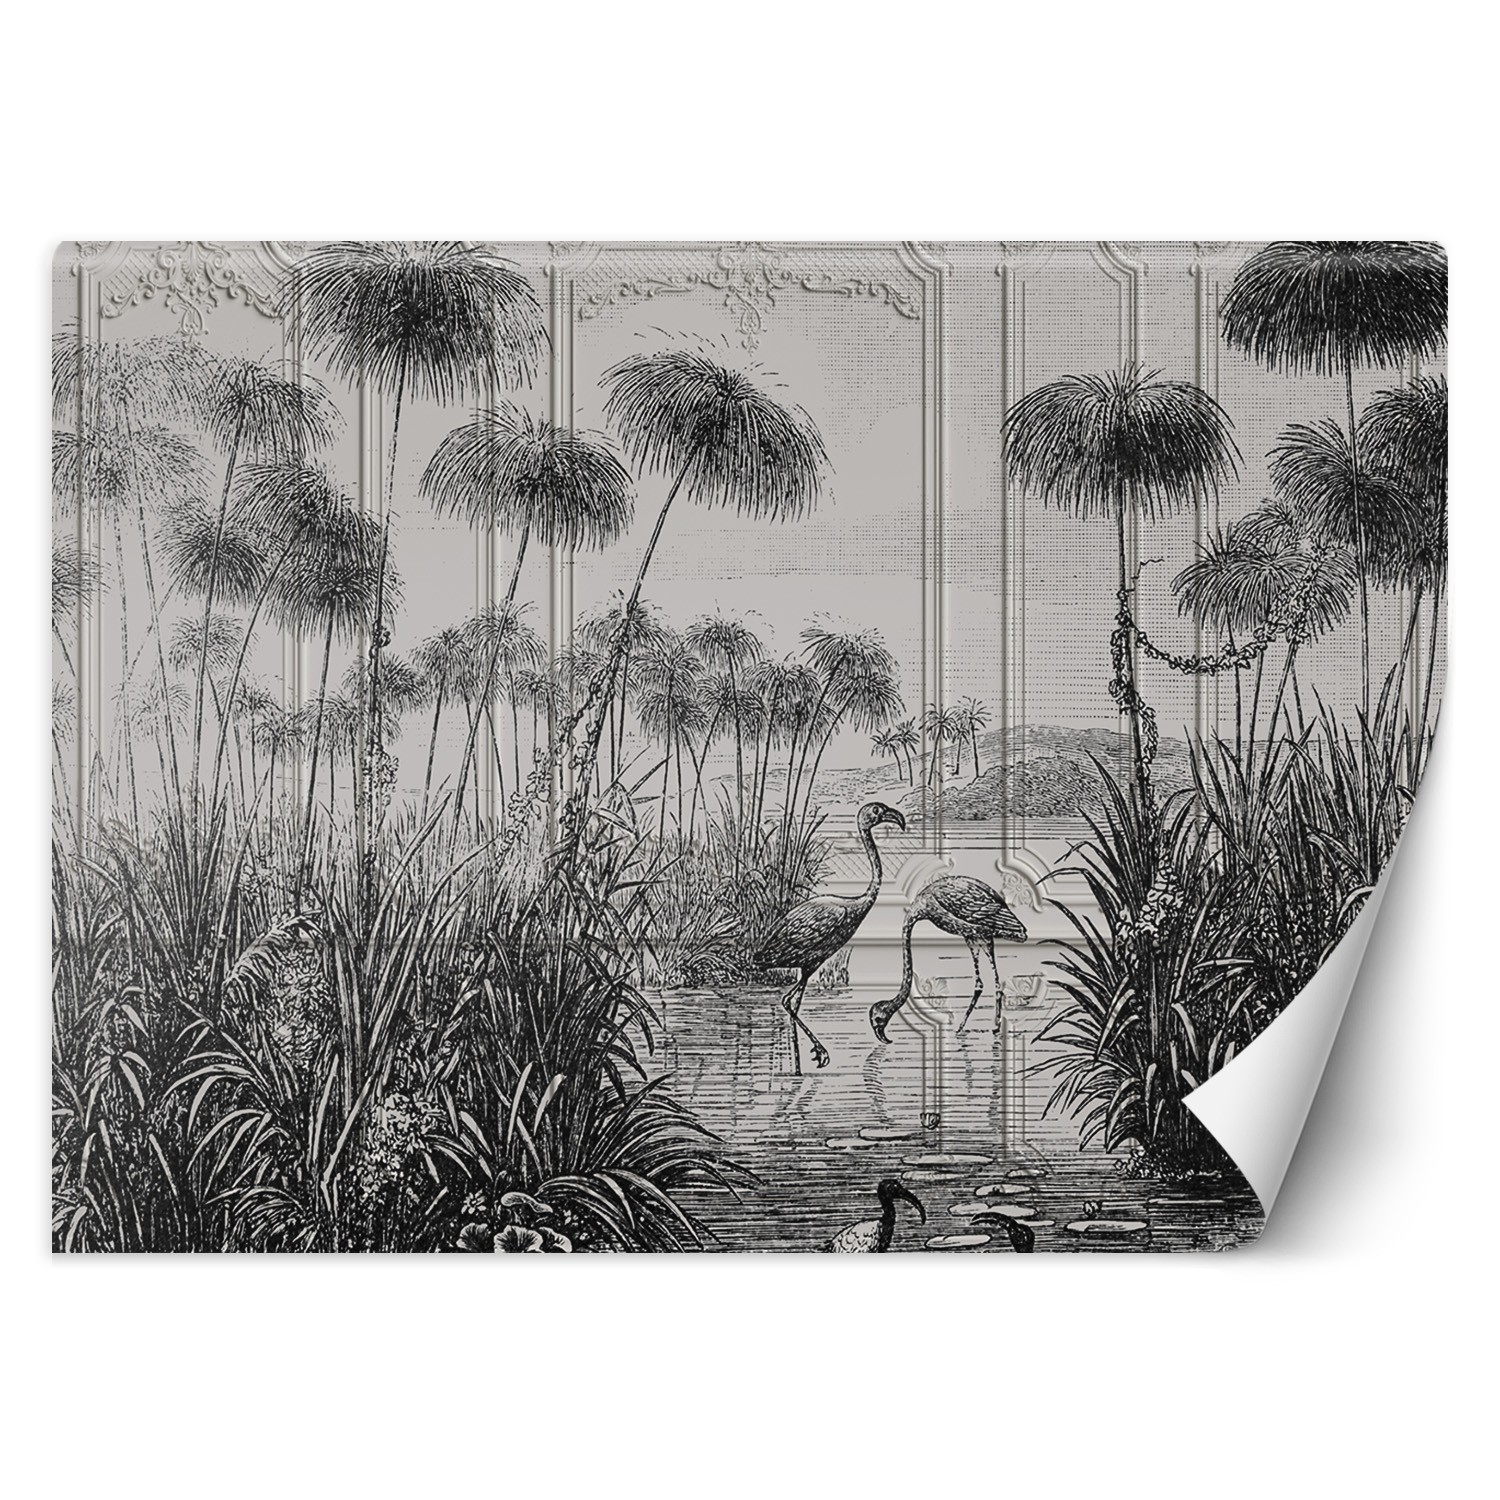 Trend24 – Behang – Vogels In Een Vijver – Vliesbehang – Fotobehang 3D – Behang Woonkamer – 450x315x2 cm – Incl. behanglijm